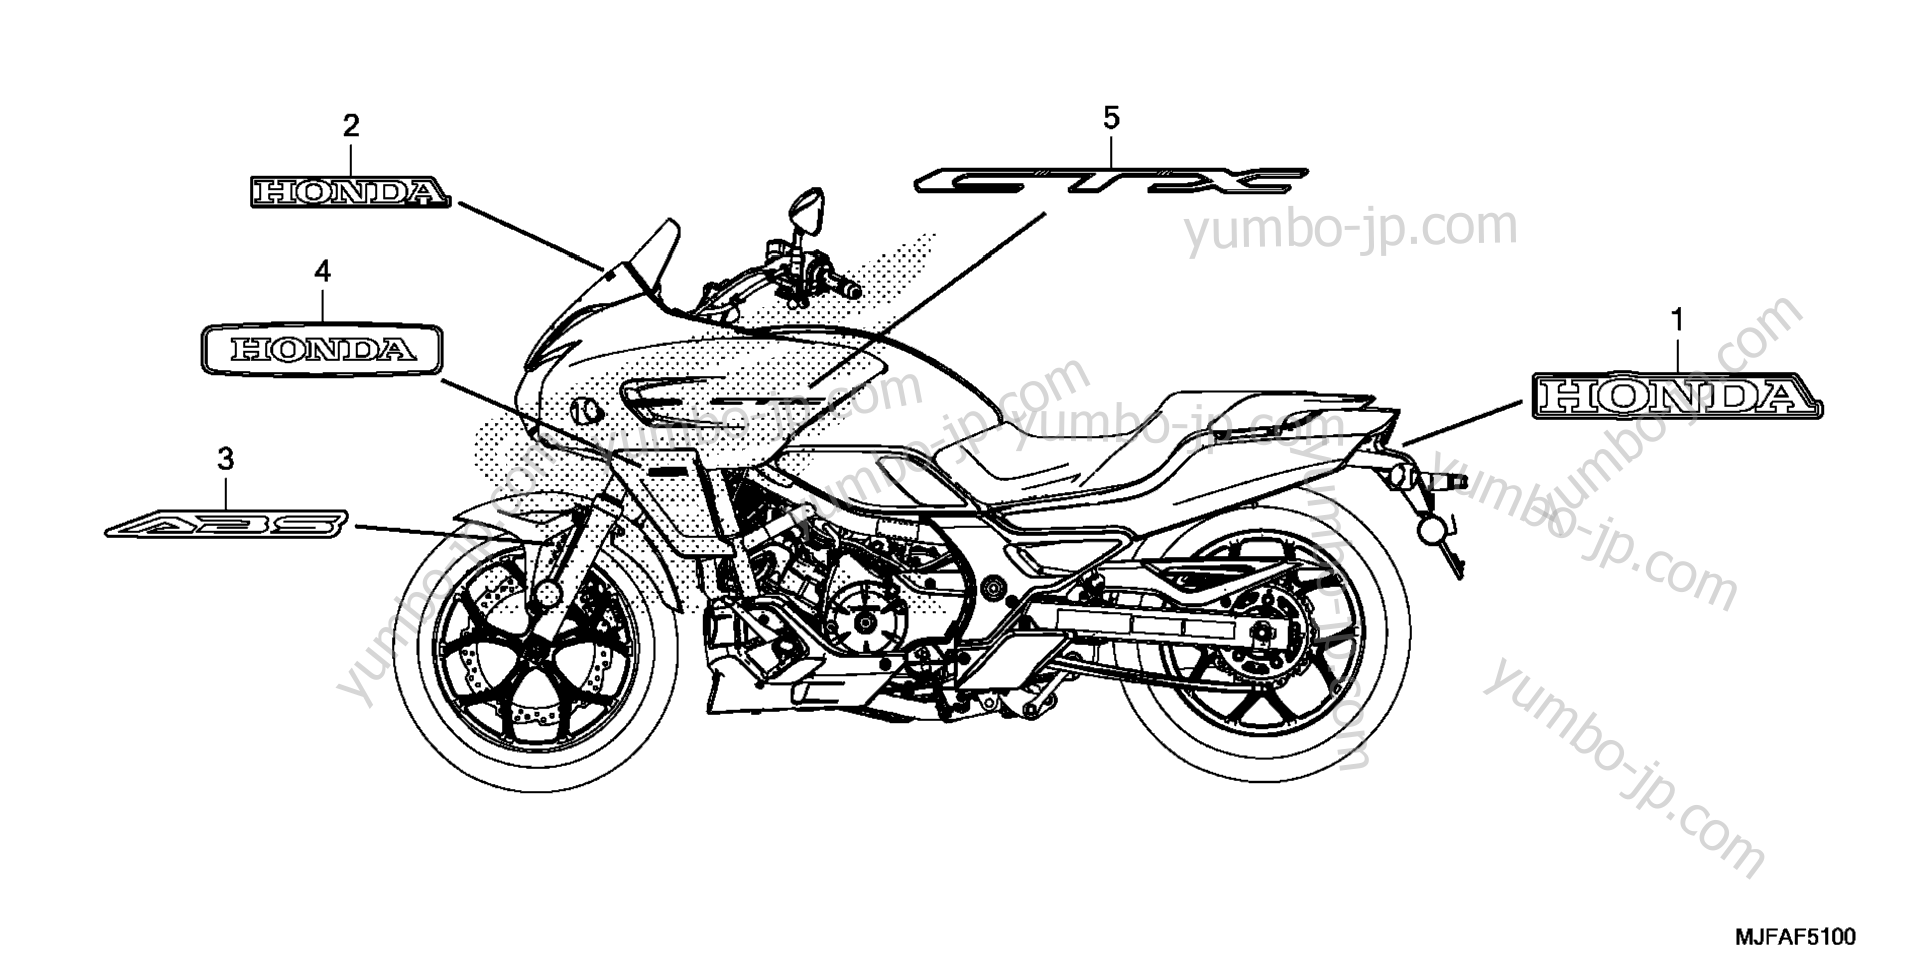 MARK / EMBLEM for motorcycles HONDA CTX700D A 2014 year